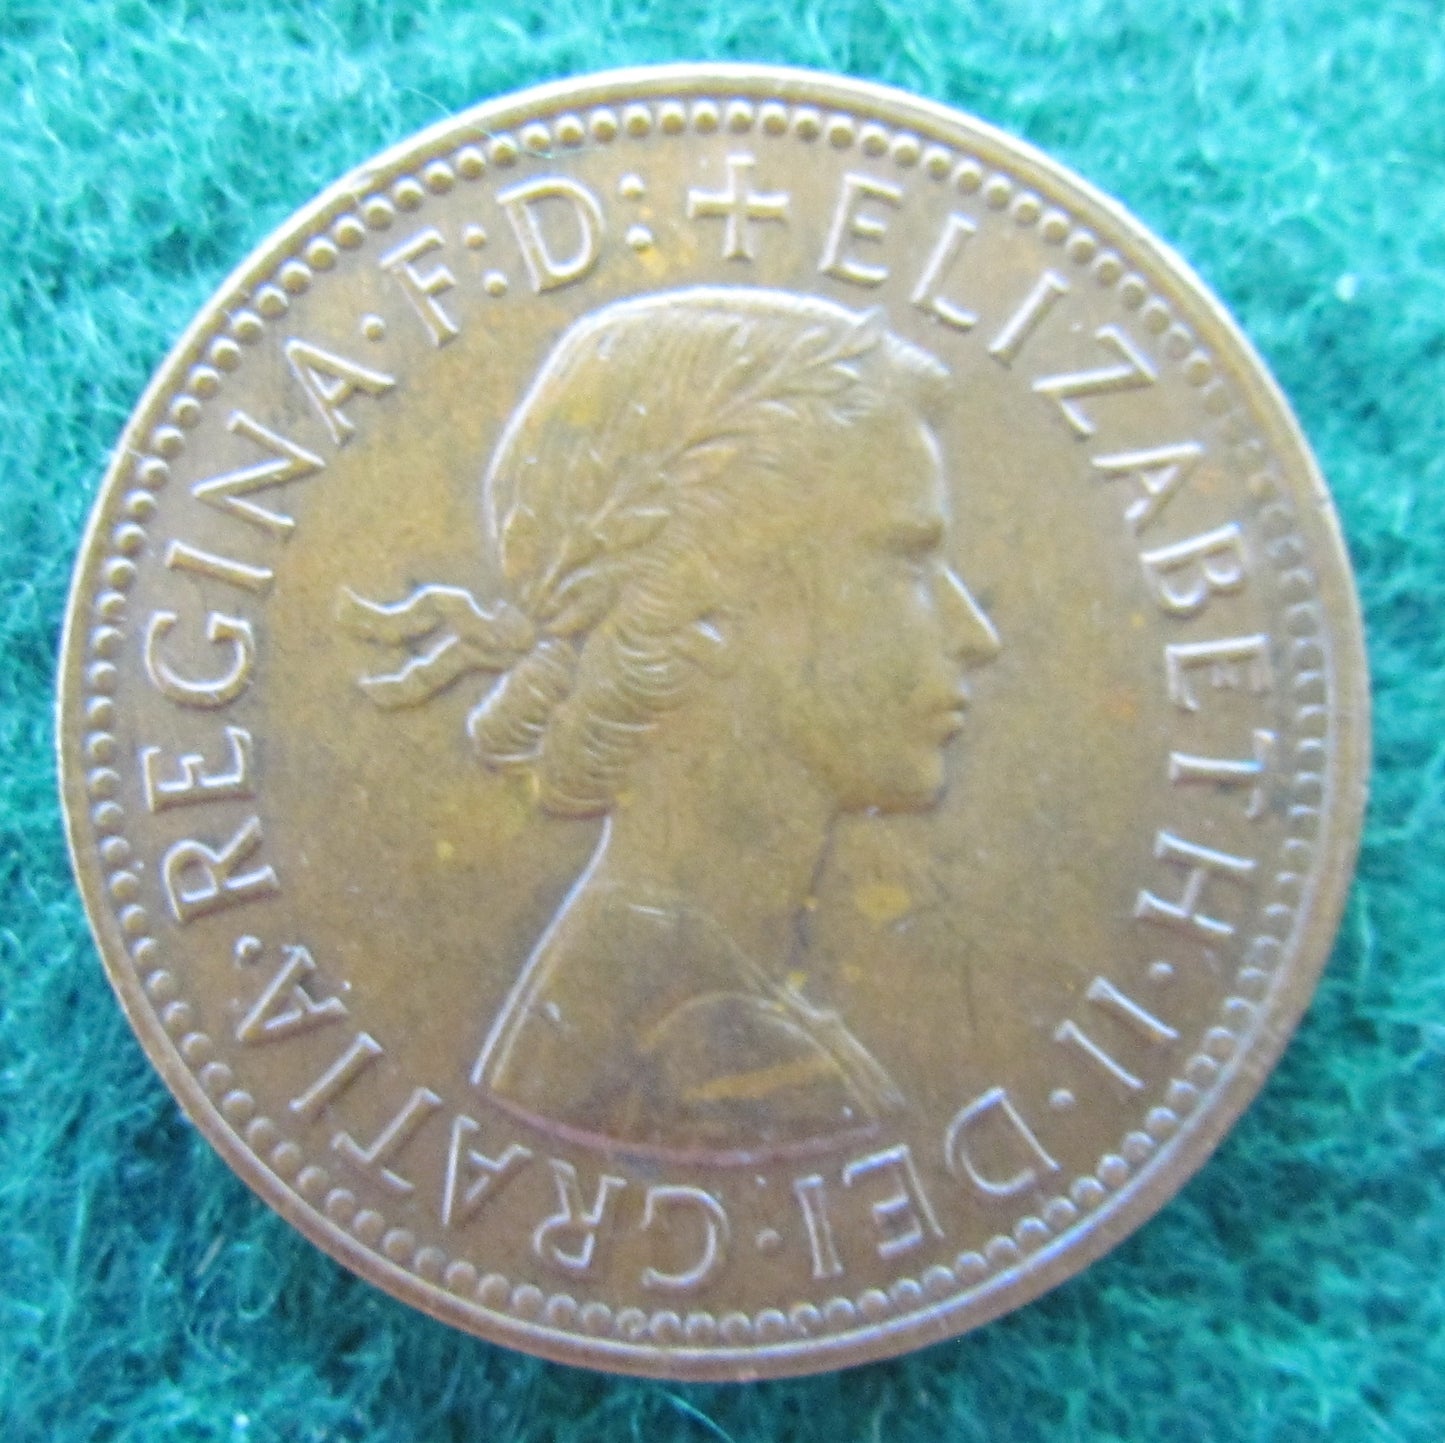 Australian 1959 1/2d Half Penny Queen Elizabeth II Coin